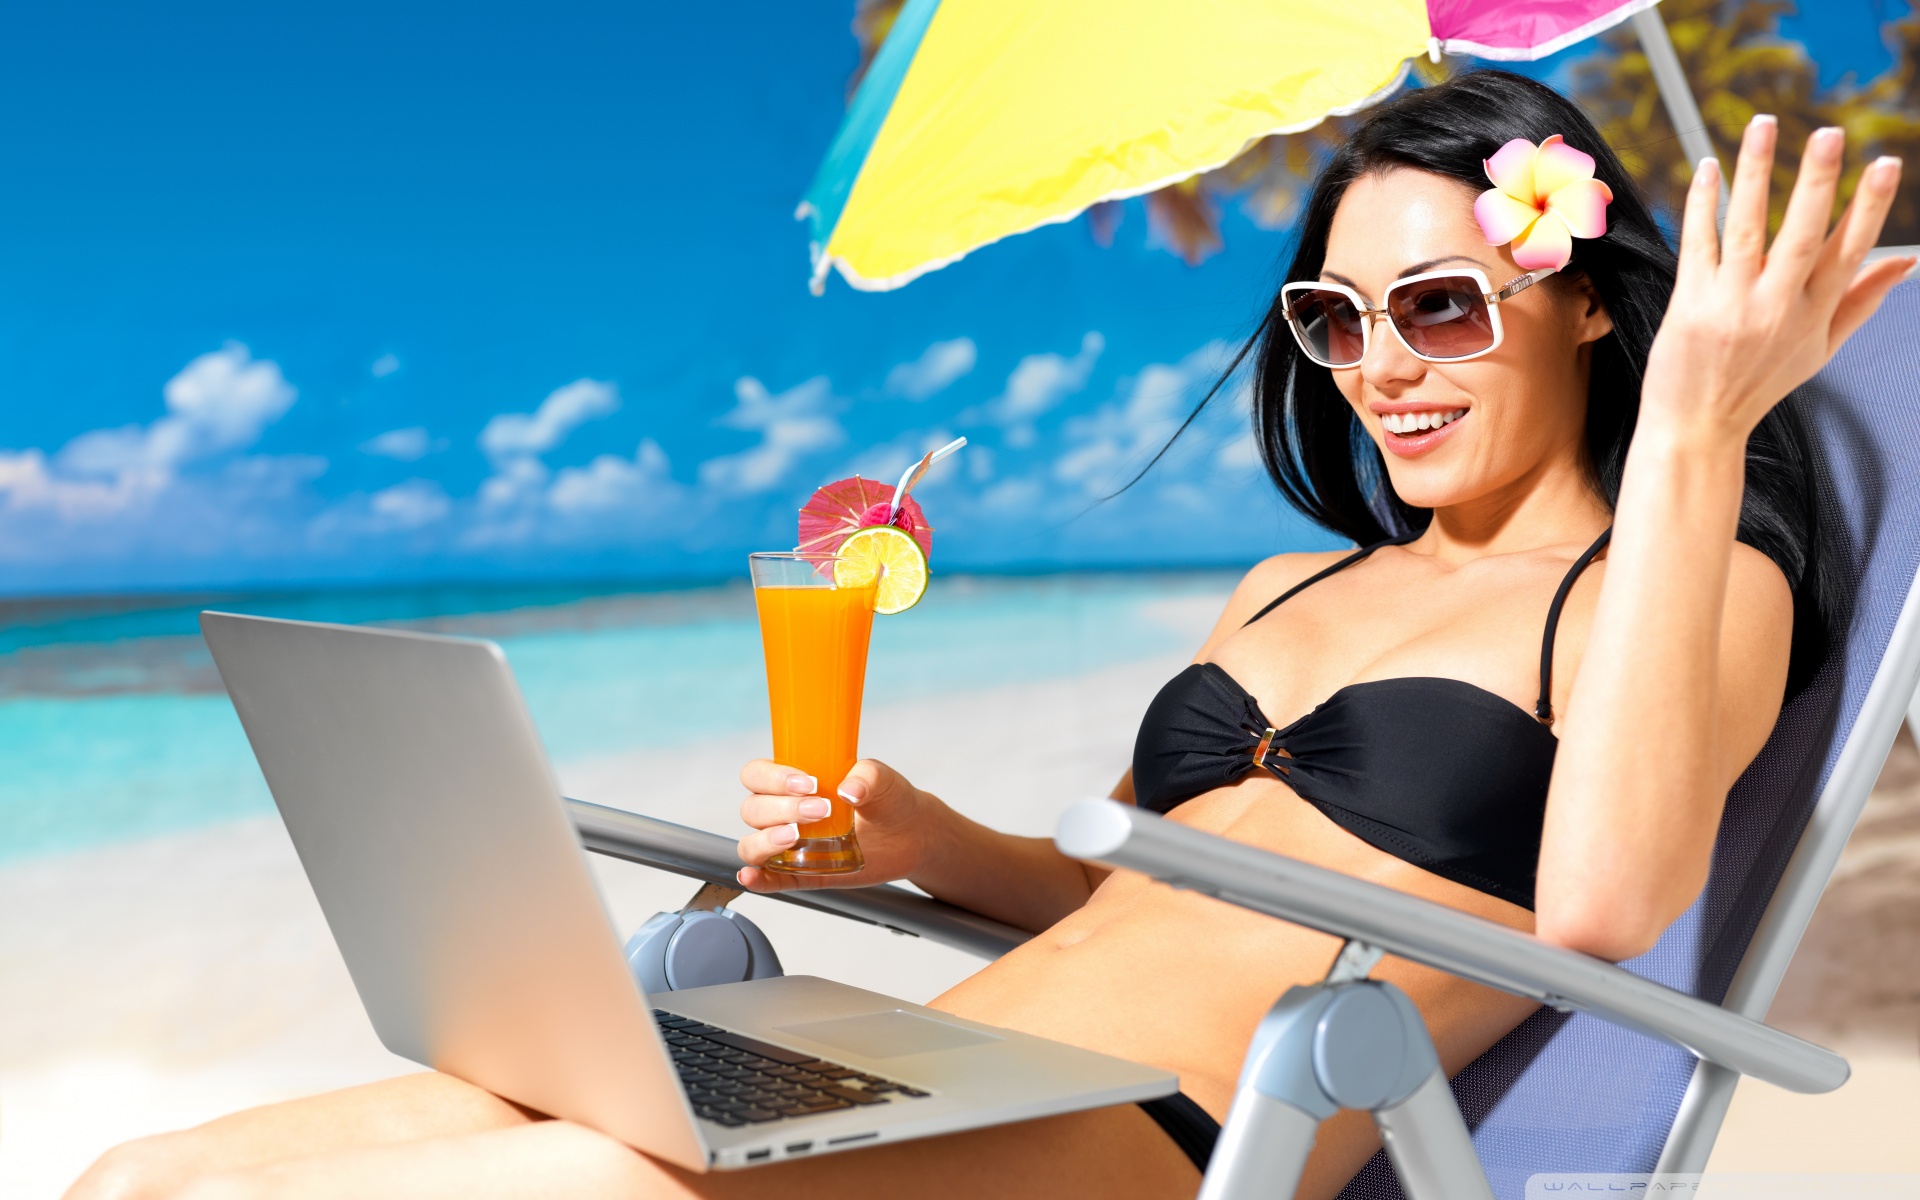 It was a beautiful summer. Лето отпуск. Девушка с ноутбуком на пляже. Девушка с ноутом на пляже. Женщина в отпуске.